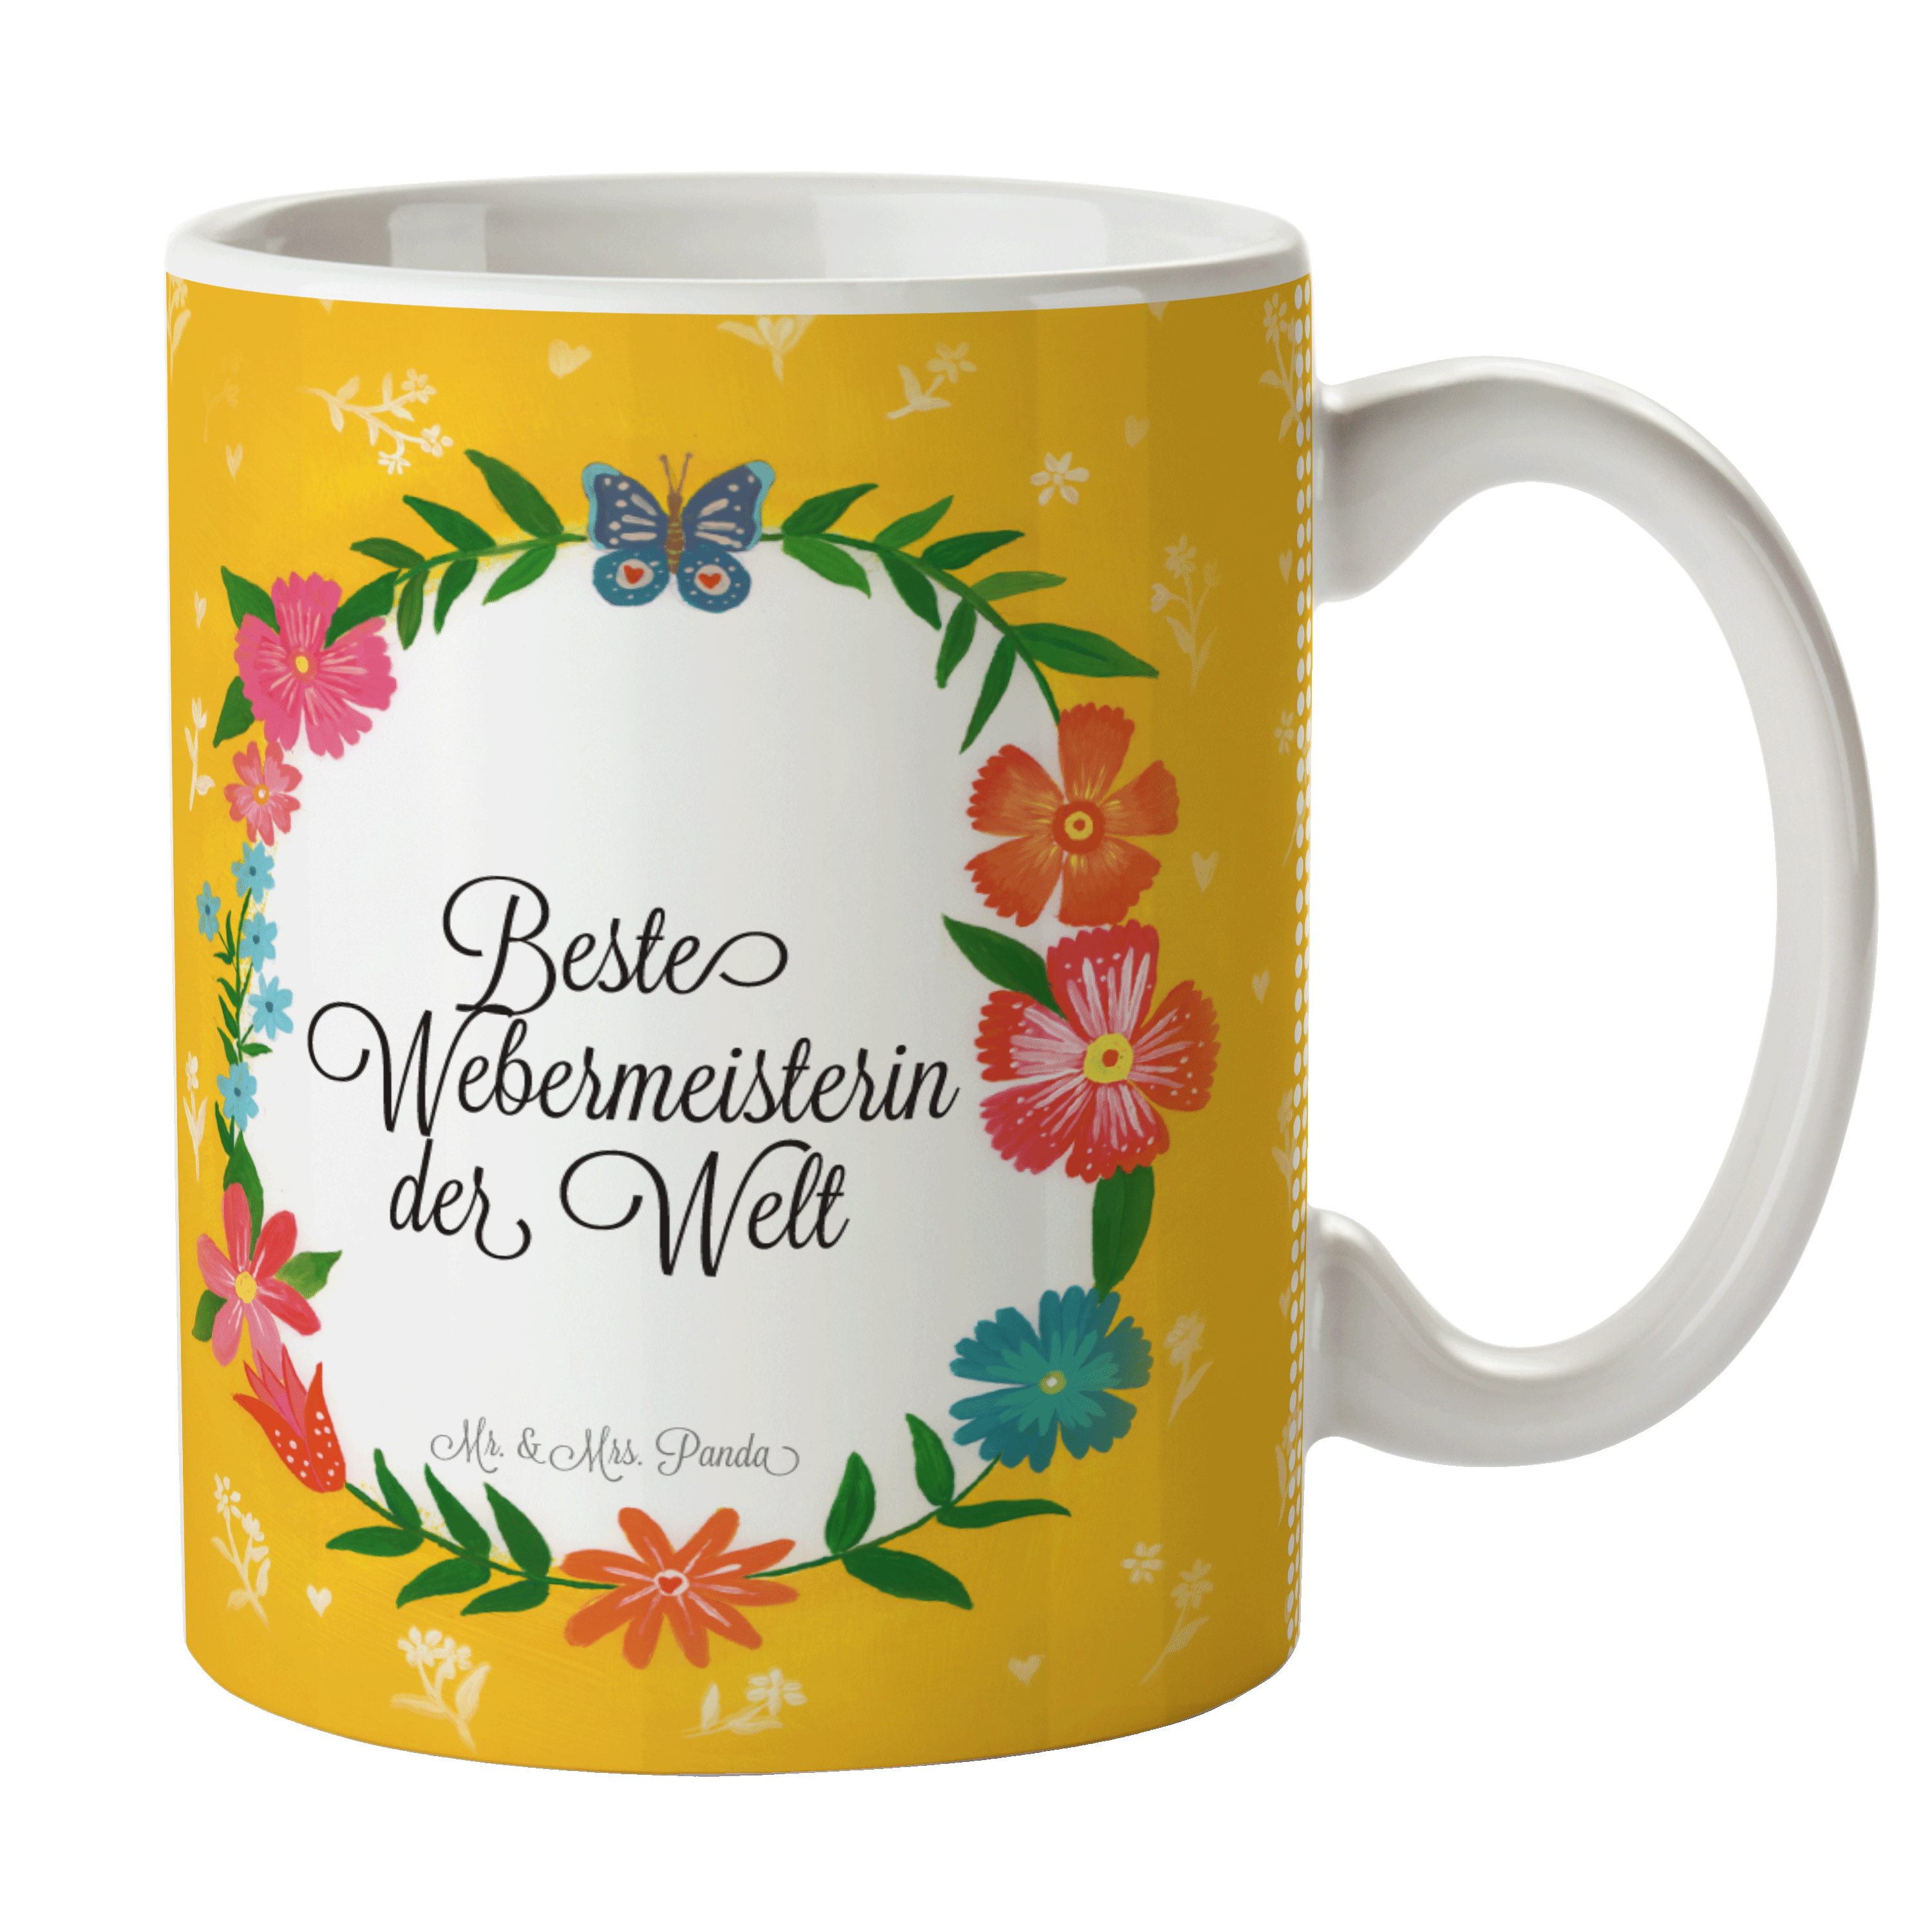 Mr. & Mrs. Panda Keramik Kaffeebecher, - Porzellantasse, Ausbildung, Webermeisterin Tasse Geschenk